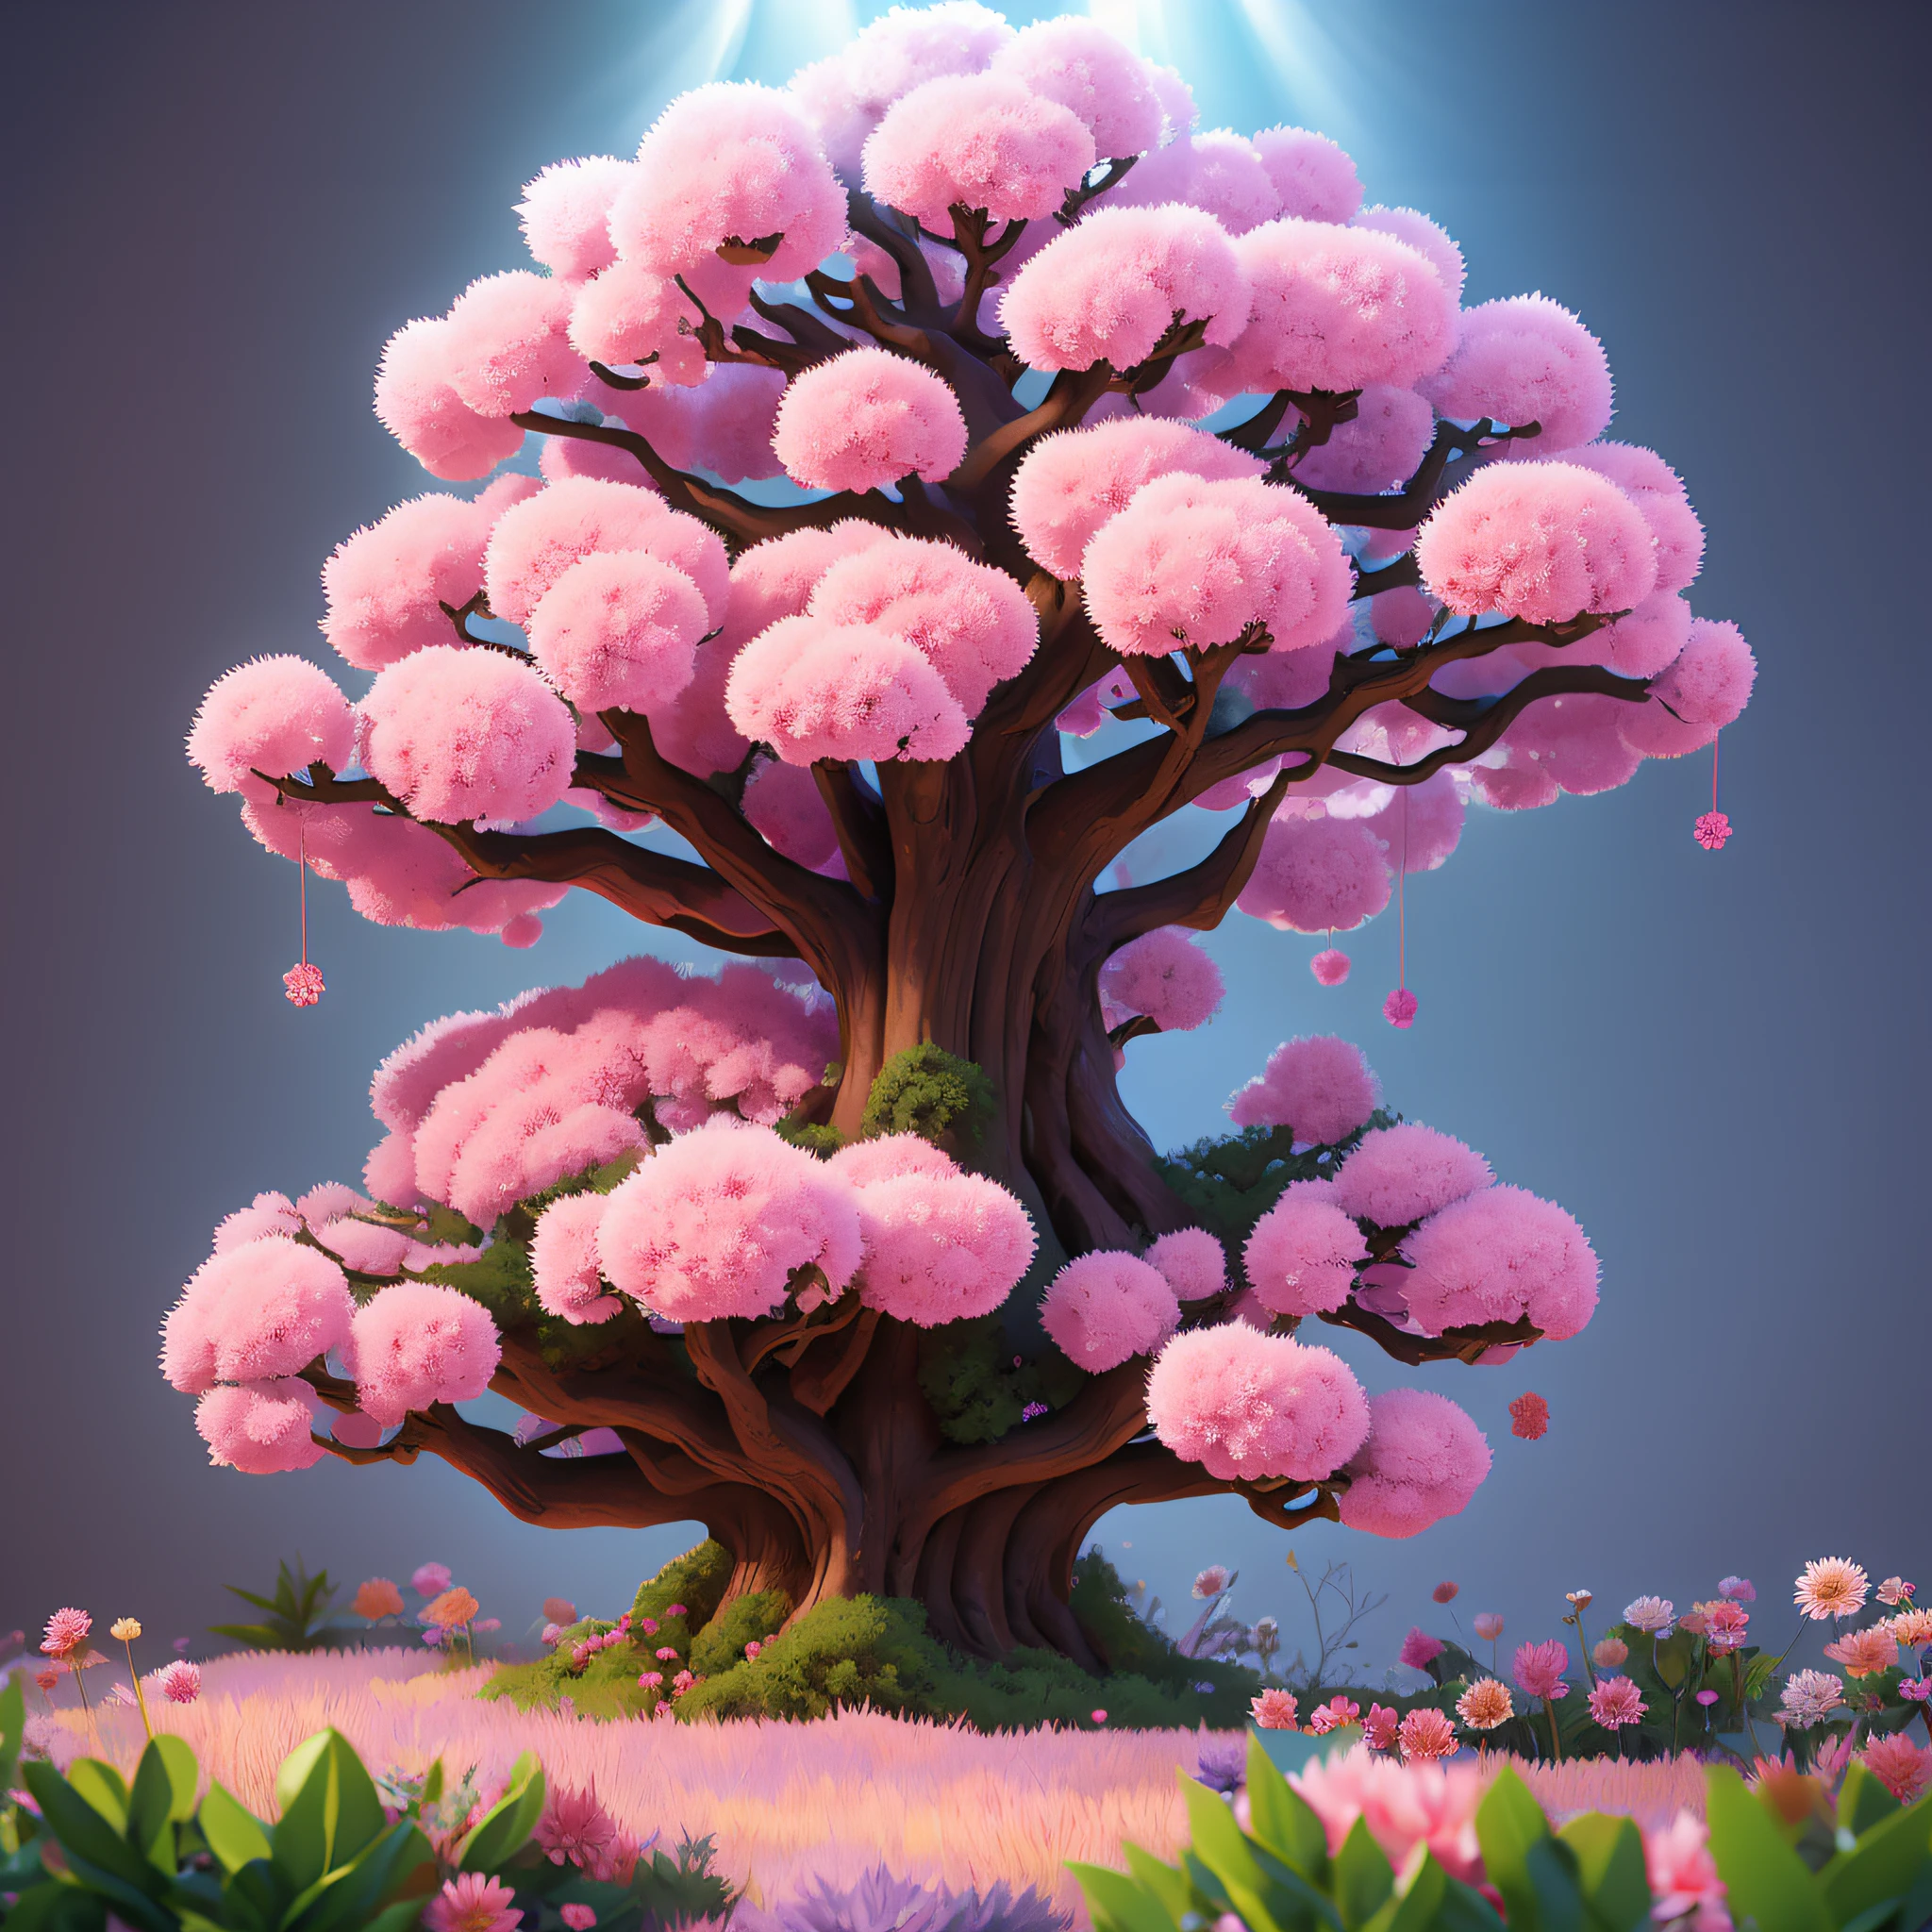 大きな木がピンクと紫の花を咲かせ、胸が美しい